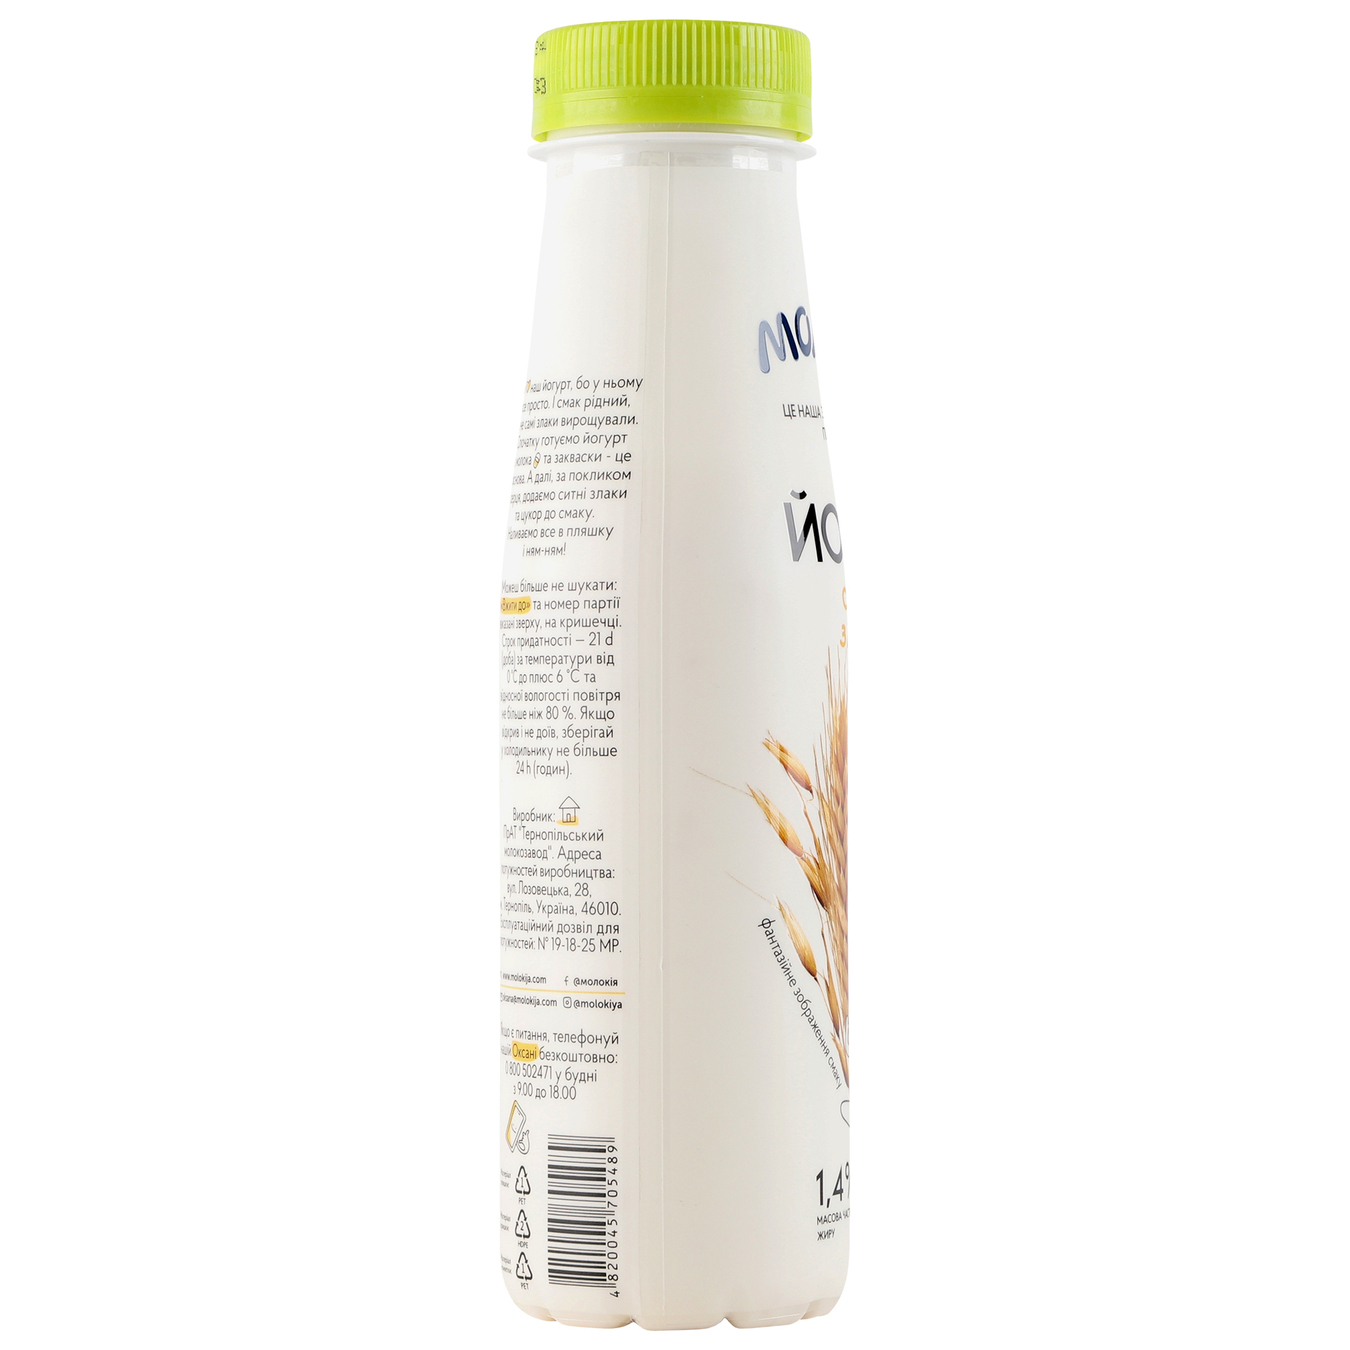 Йогурт Молокия Сытные злаки 1,4% 250г 6